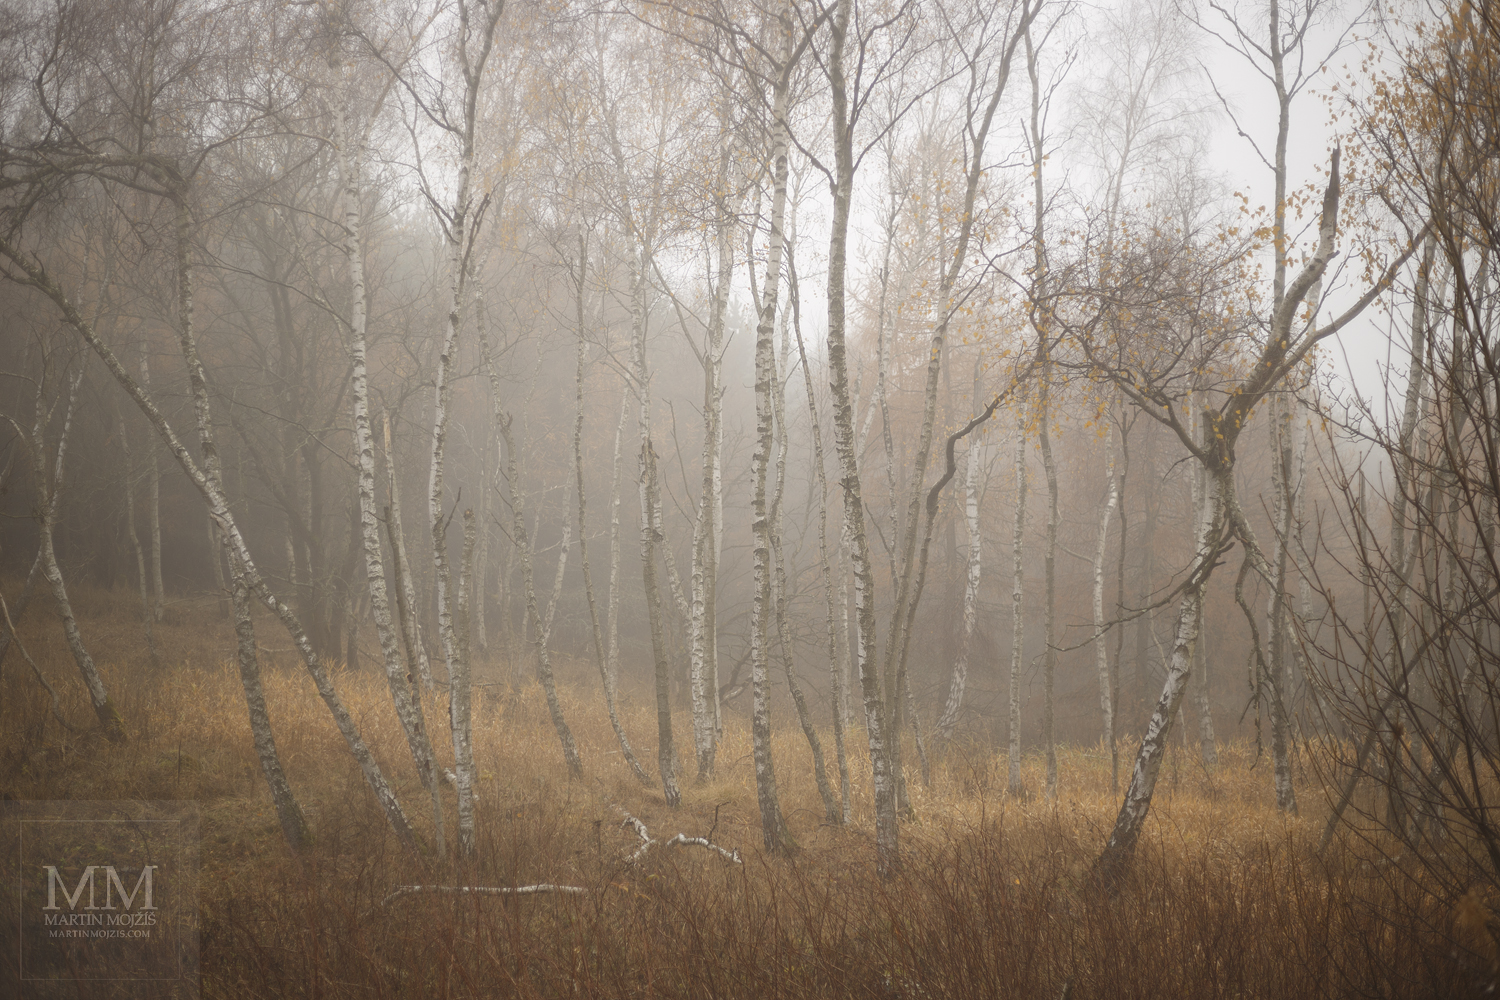 Velkoformátová umělecká fotografie březového háje v mlze. Martin Mojžíš.